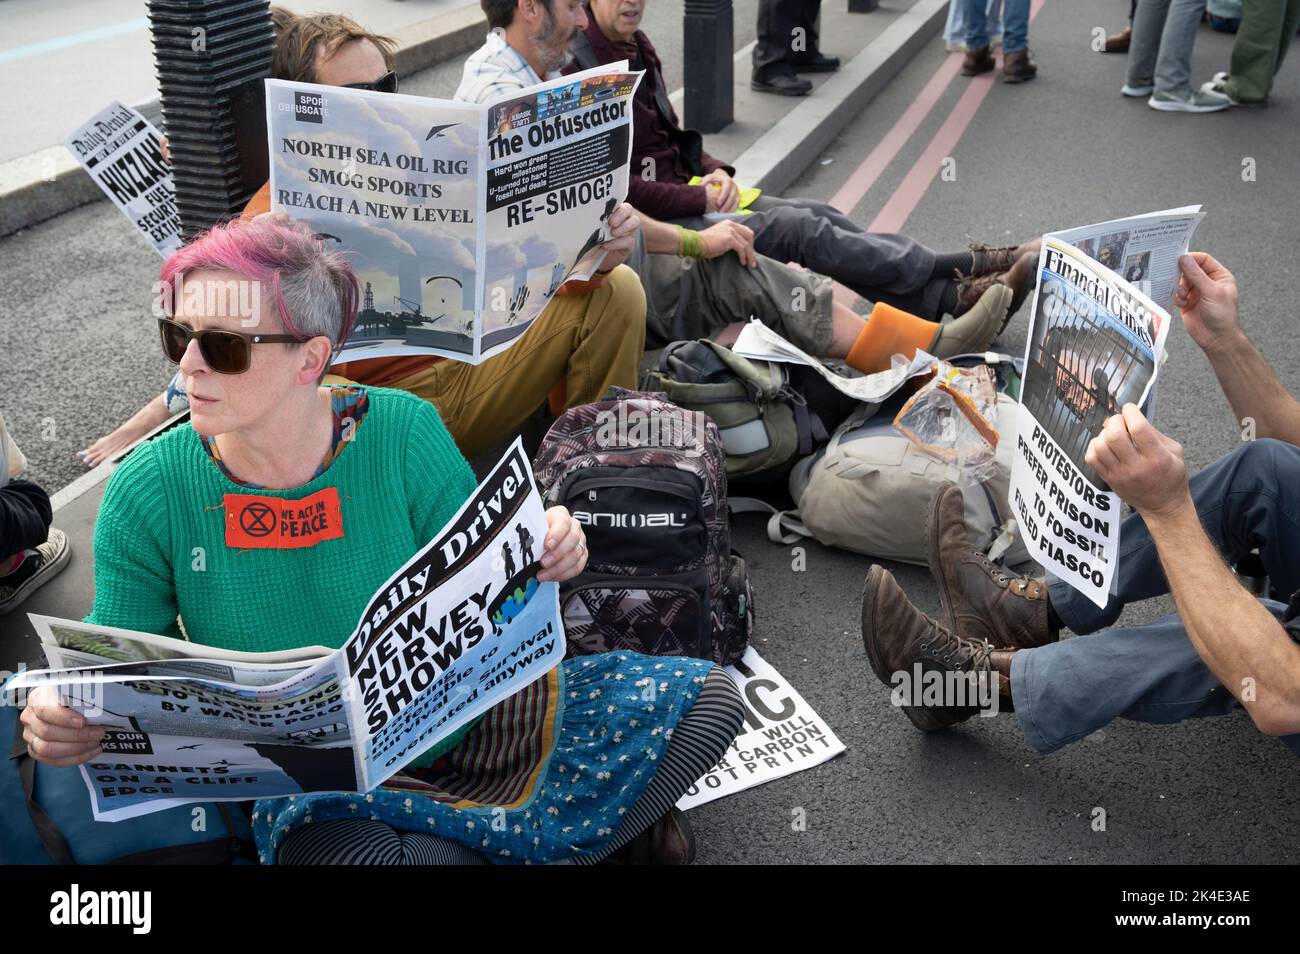 Londra. La gente protesta contro l'industria petrolifera e il costo della crisi. Foto Stock